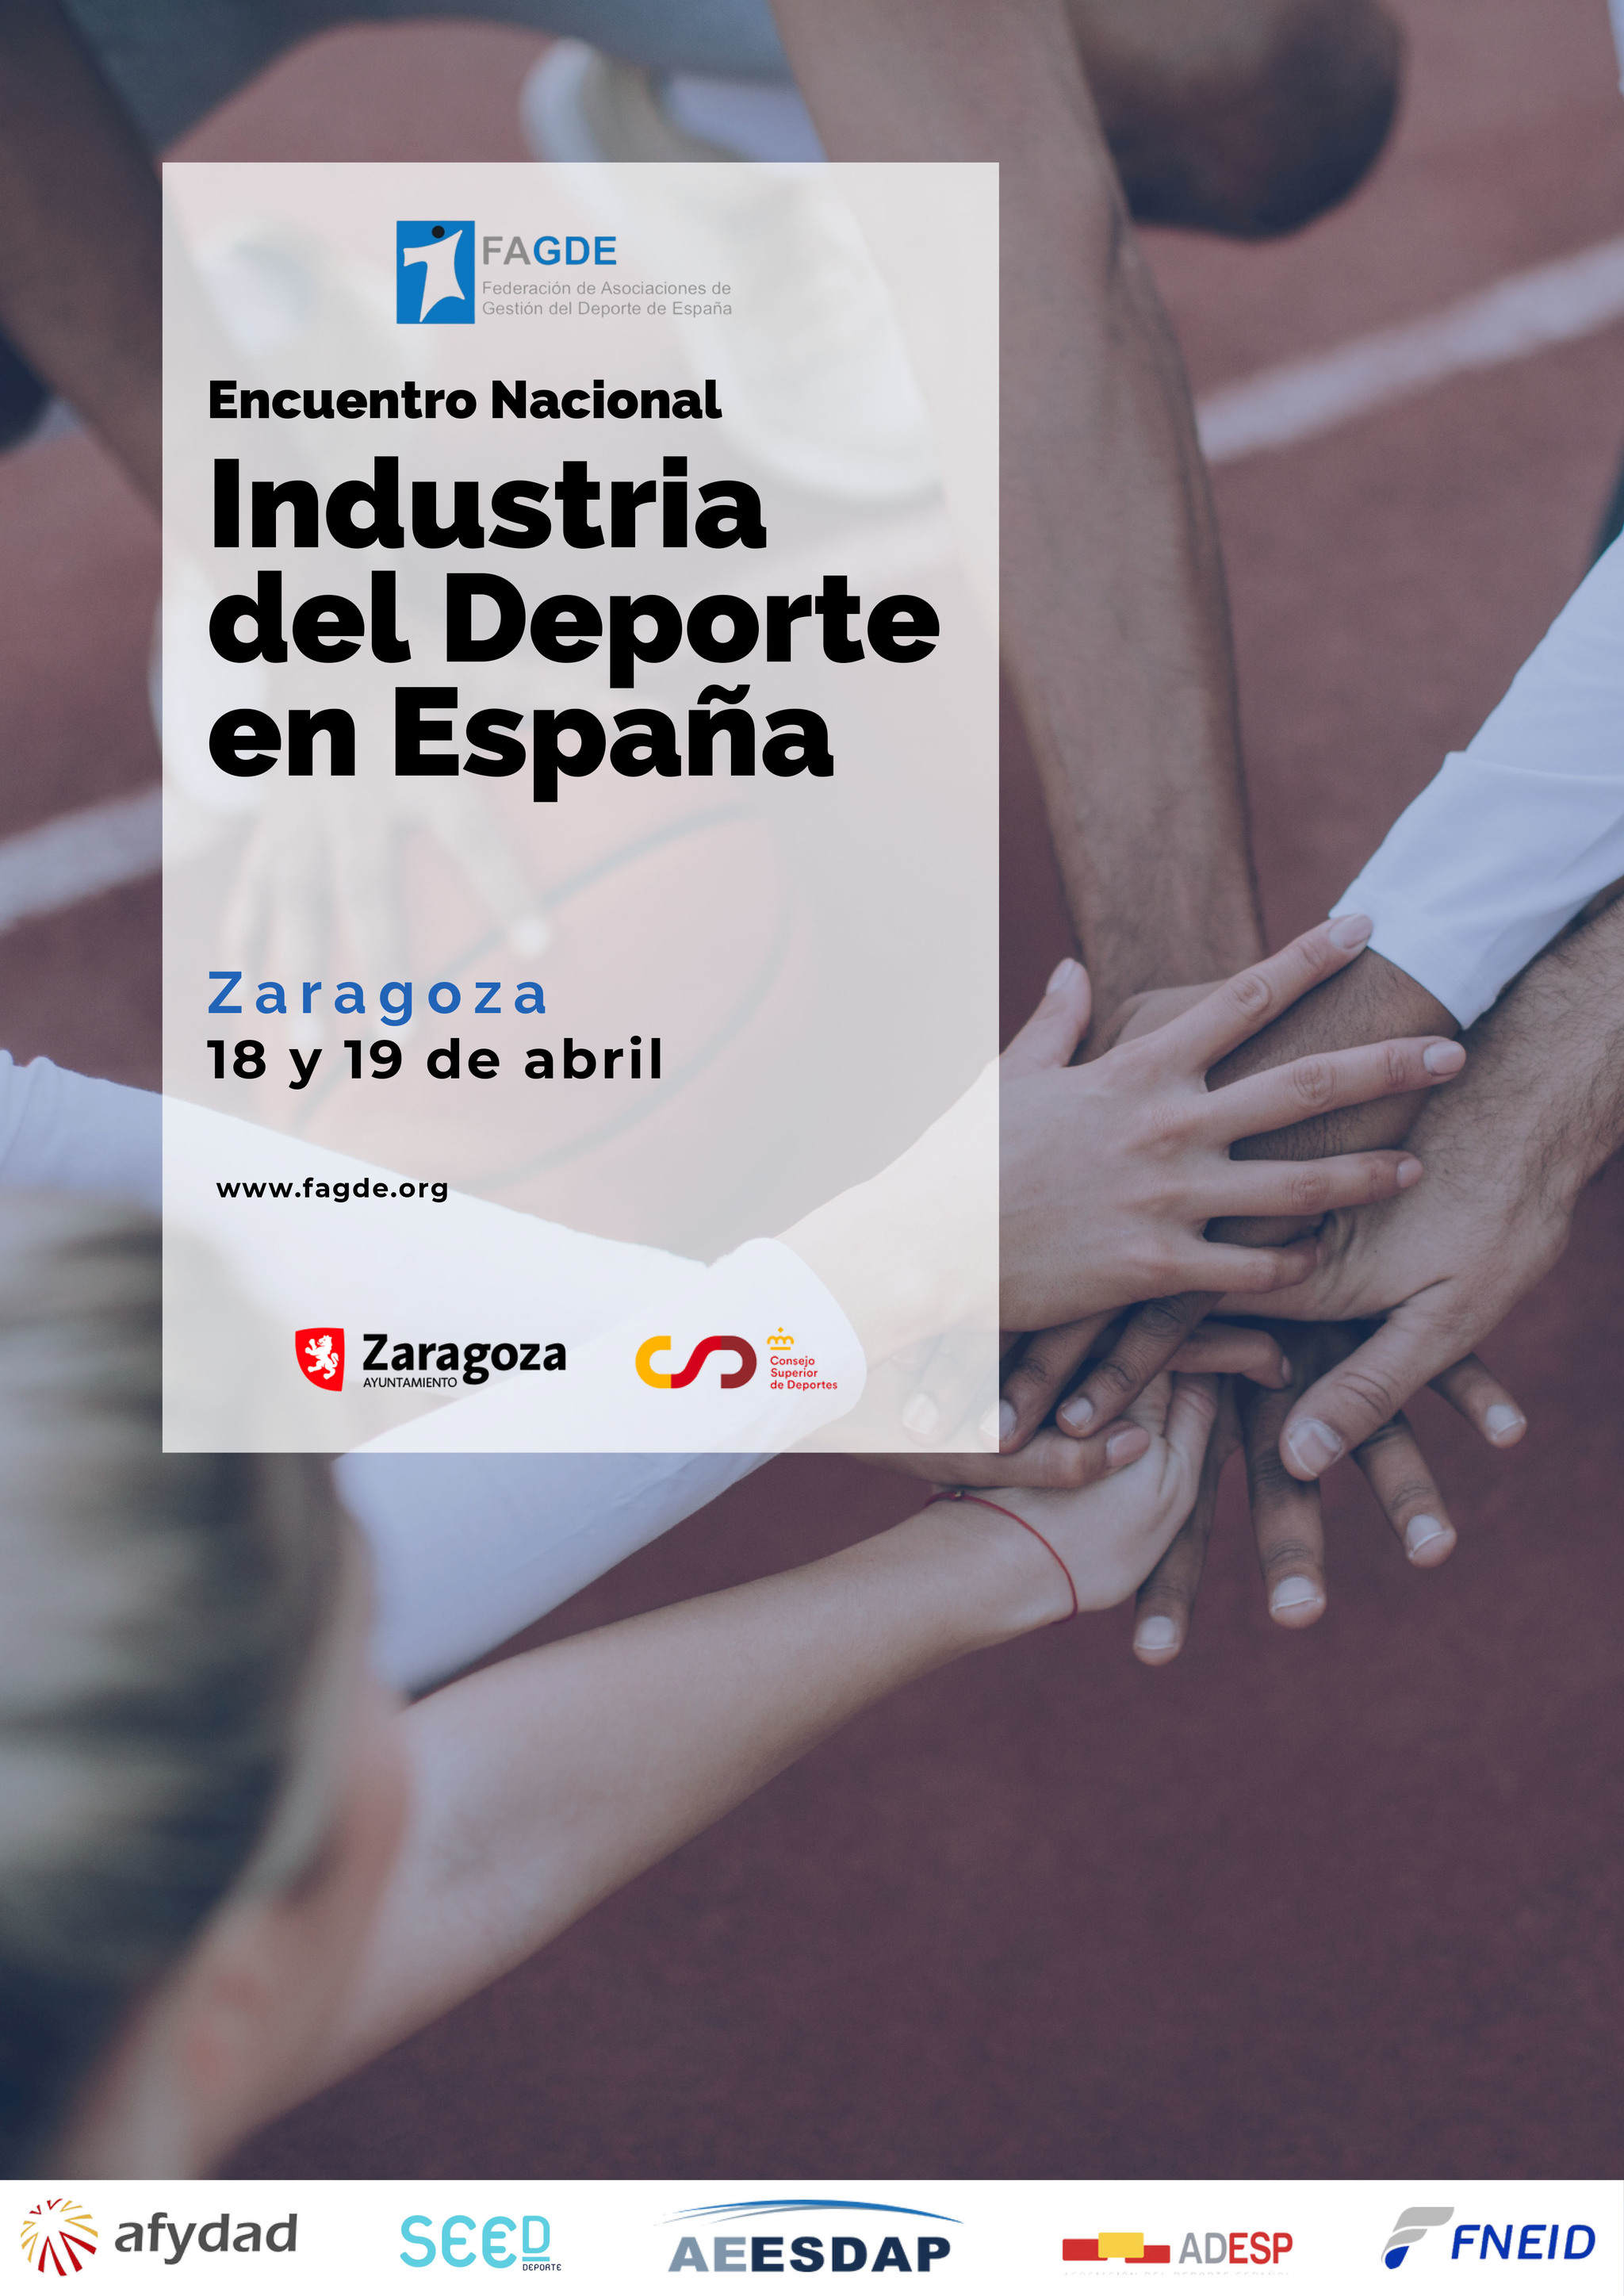 Marca participa en el 1� Encuentro Nacional de la Industria del Deporte en Zaragoza